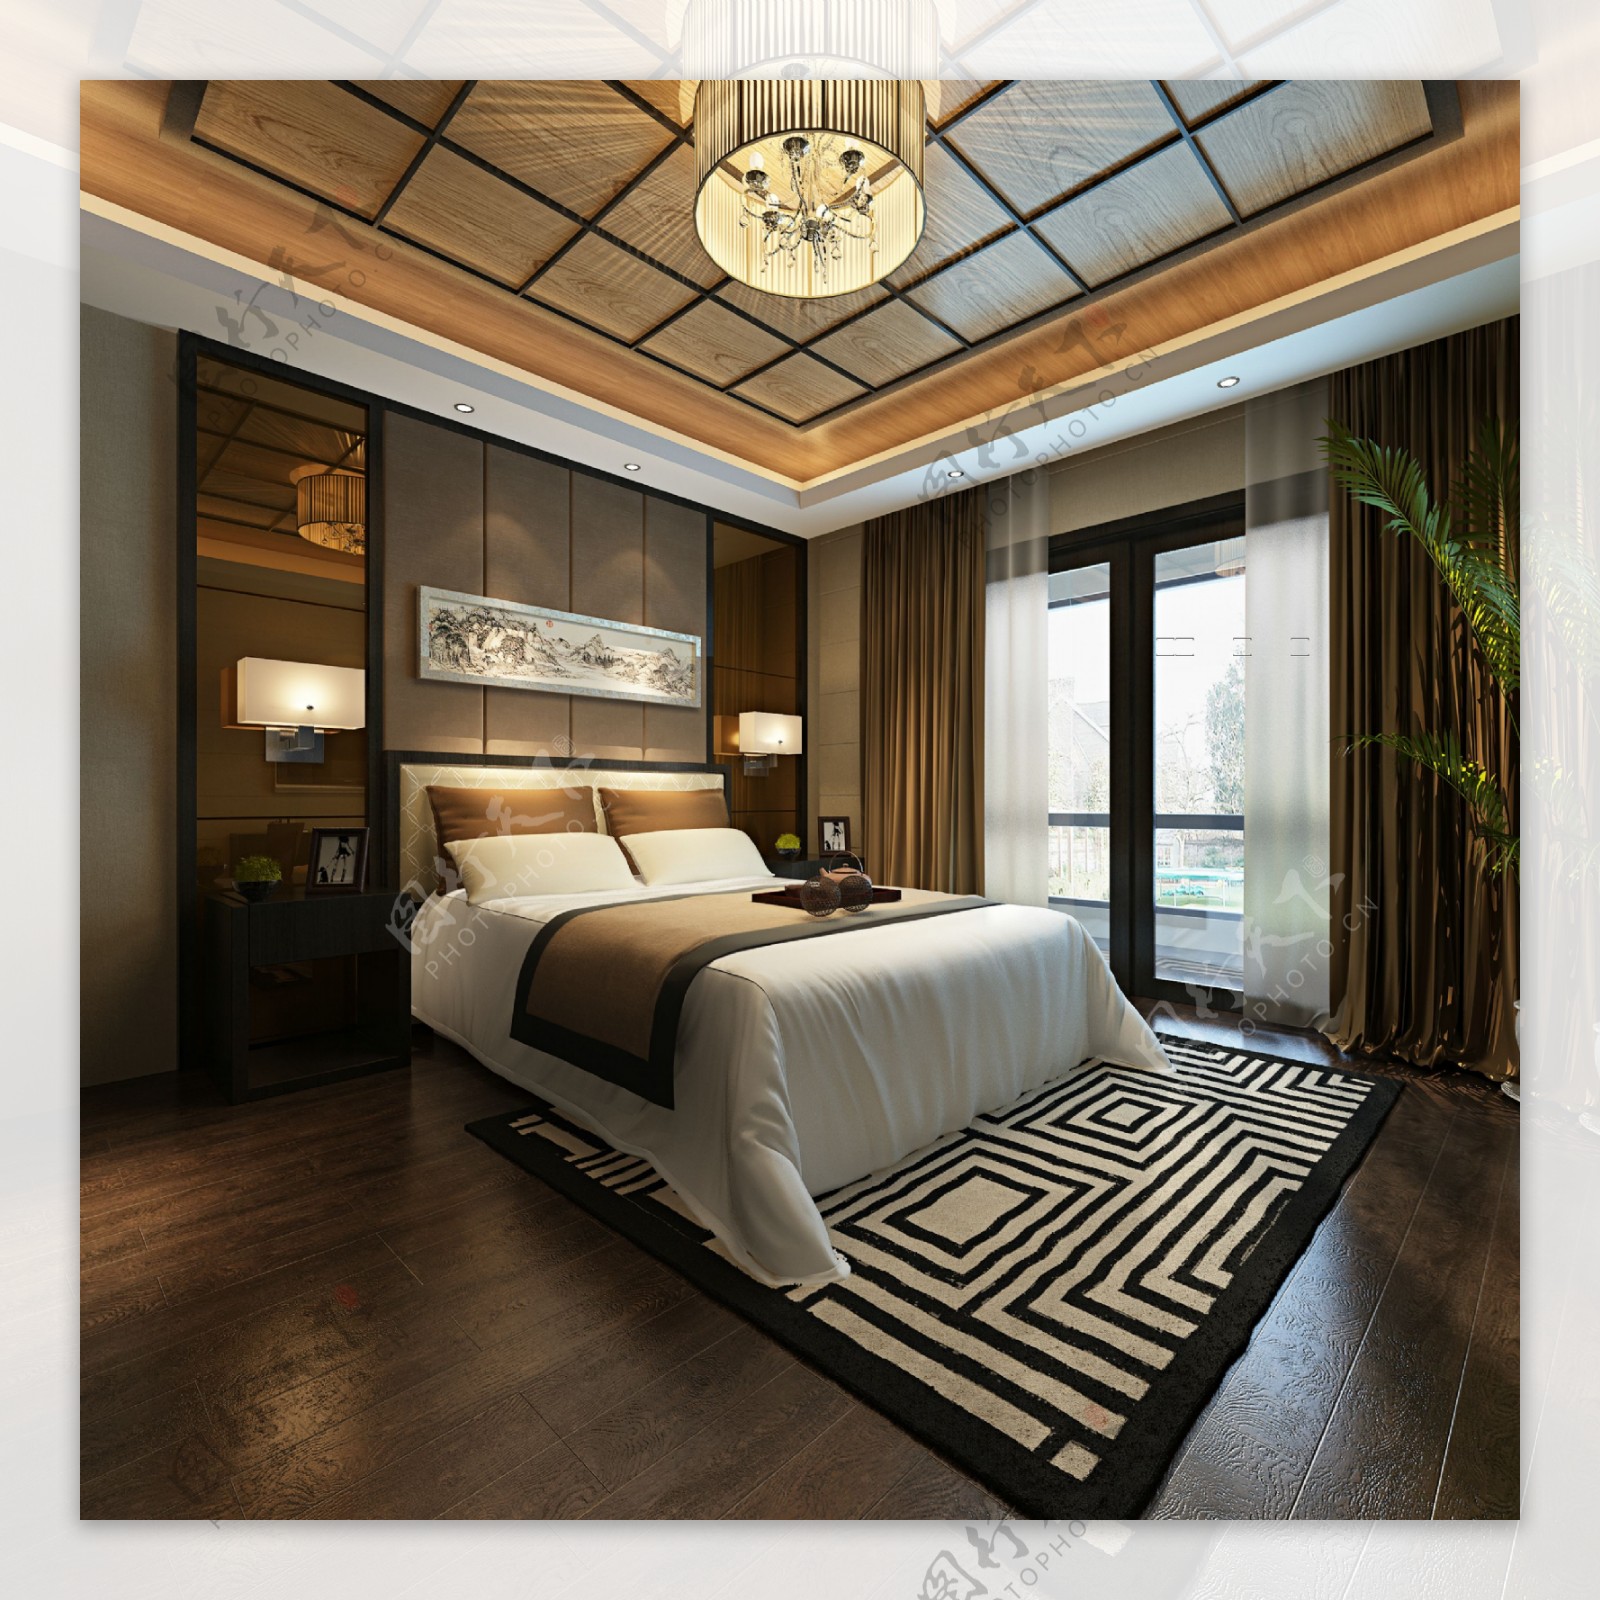 中式古雅清亮卧室室内装修效果图